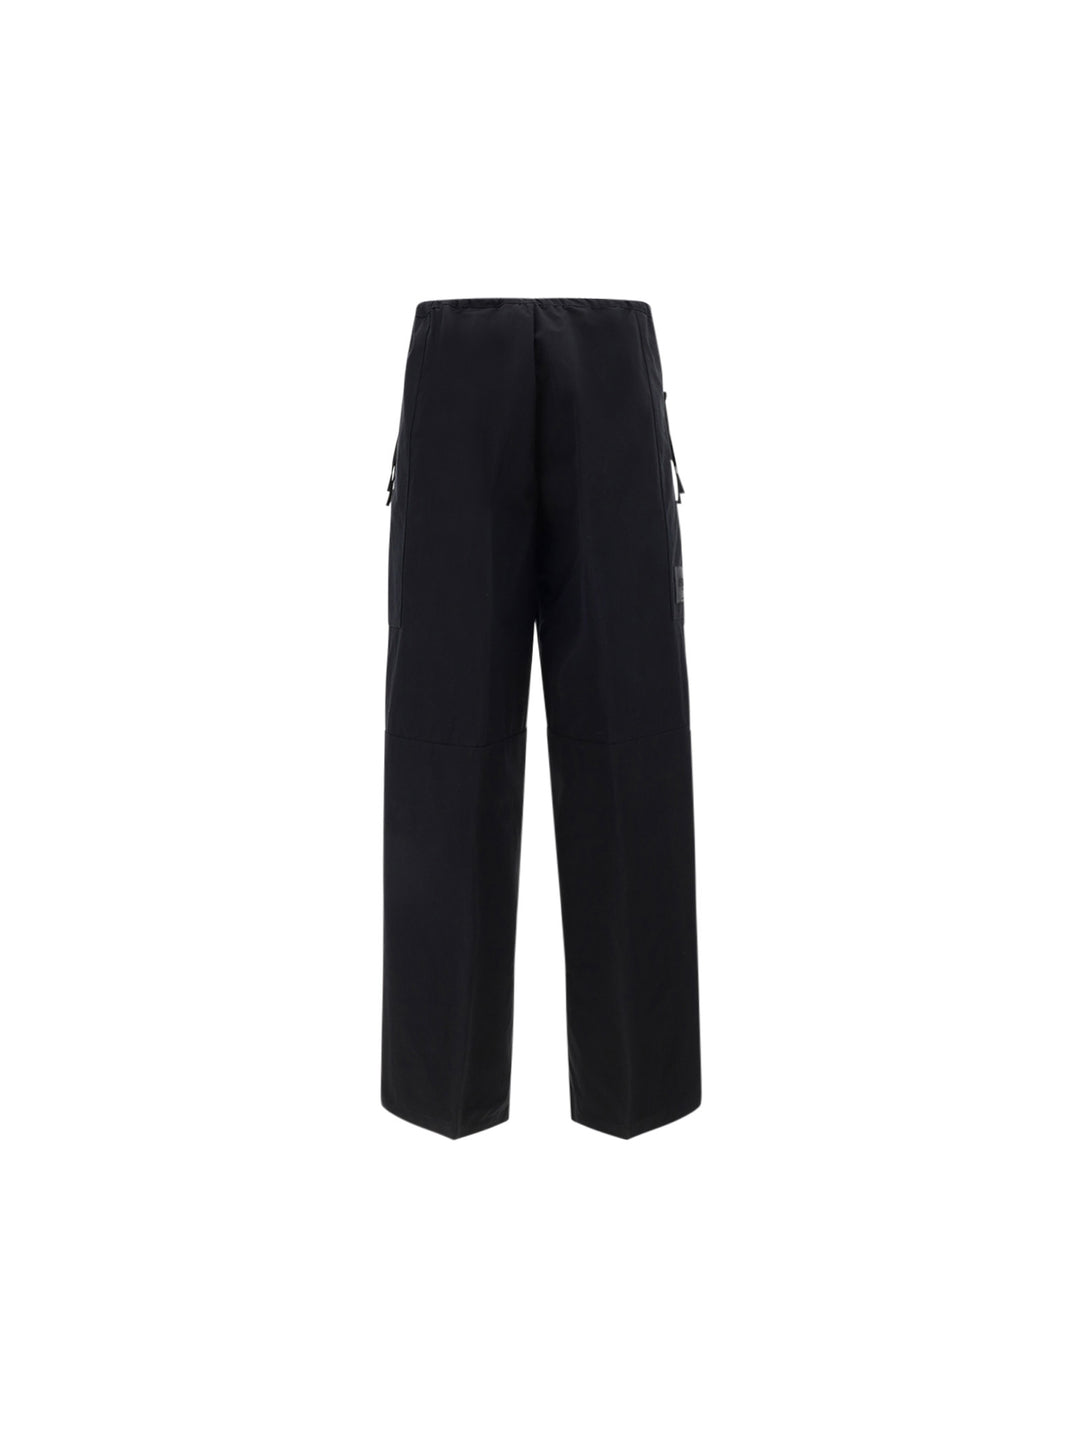 Pantalone in cotone compatto nero